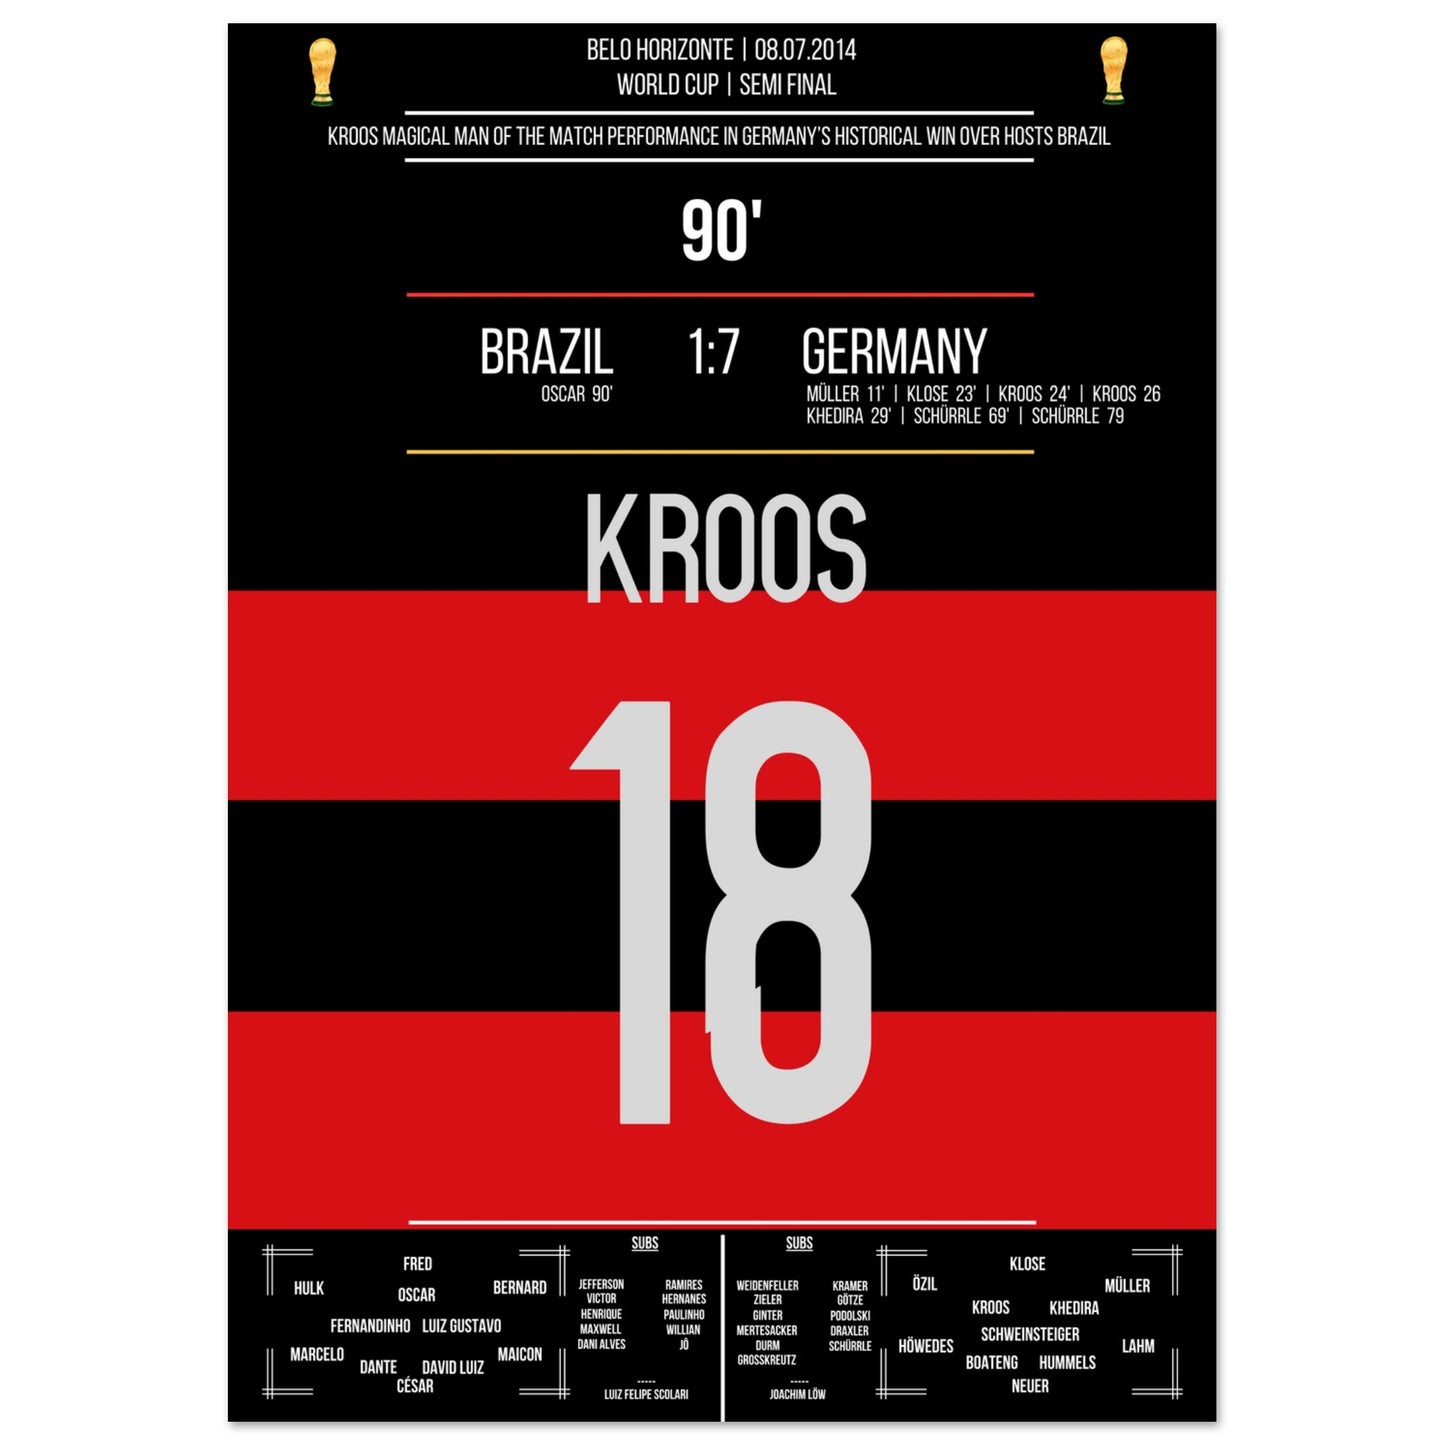 Kroos' großer Auftritt im WM Halbfinale gegen Brasilien 2014